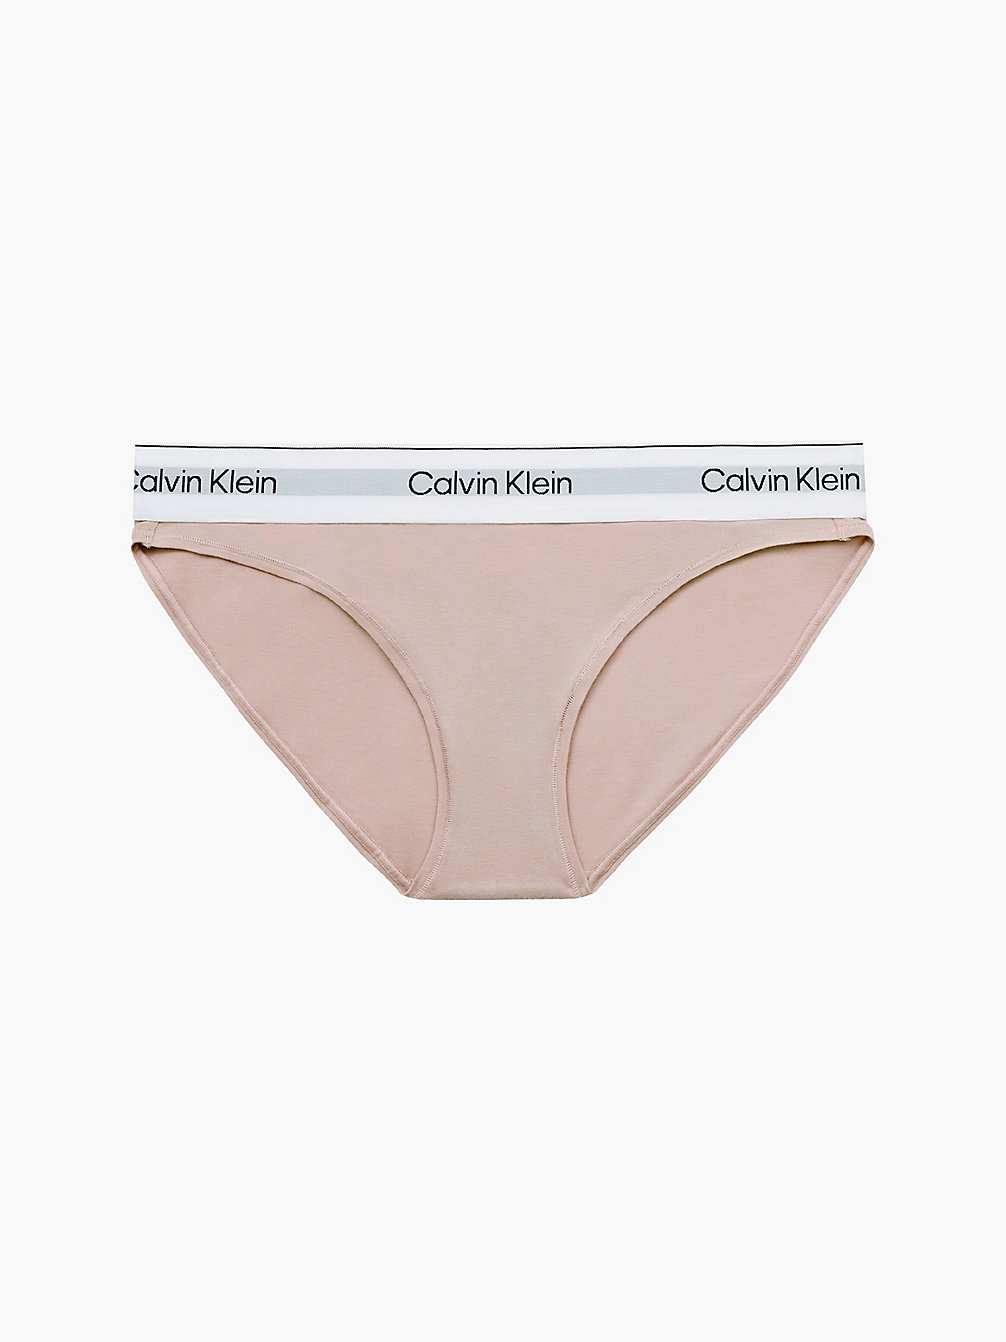 Slip Bikini - Modern Cotton > CEDAR > undefined donna > Calvin Klein